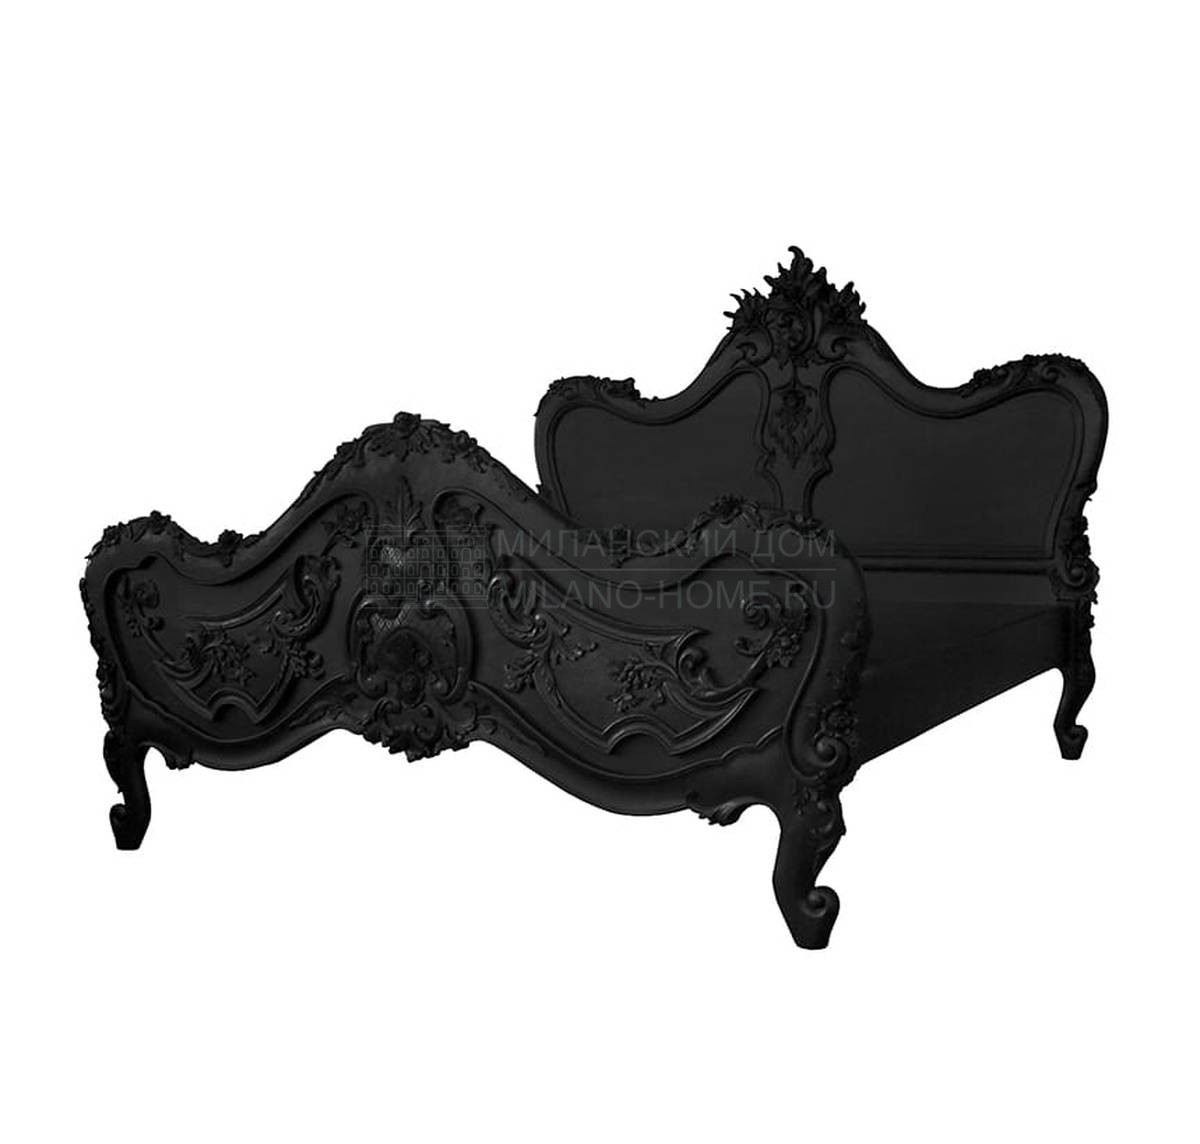 Кровать с деревянным изголовьем Black Baroque bed из Великобритании фабрики JIMMIE MARTIN